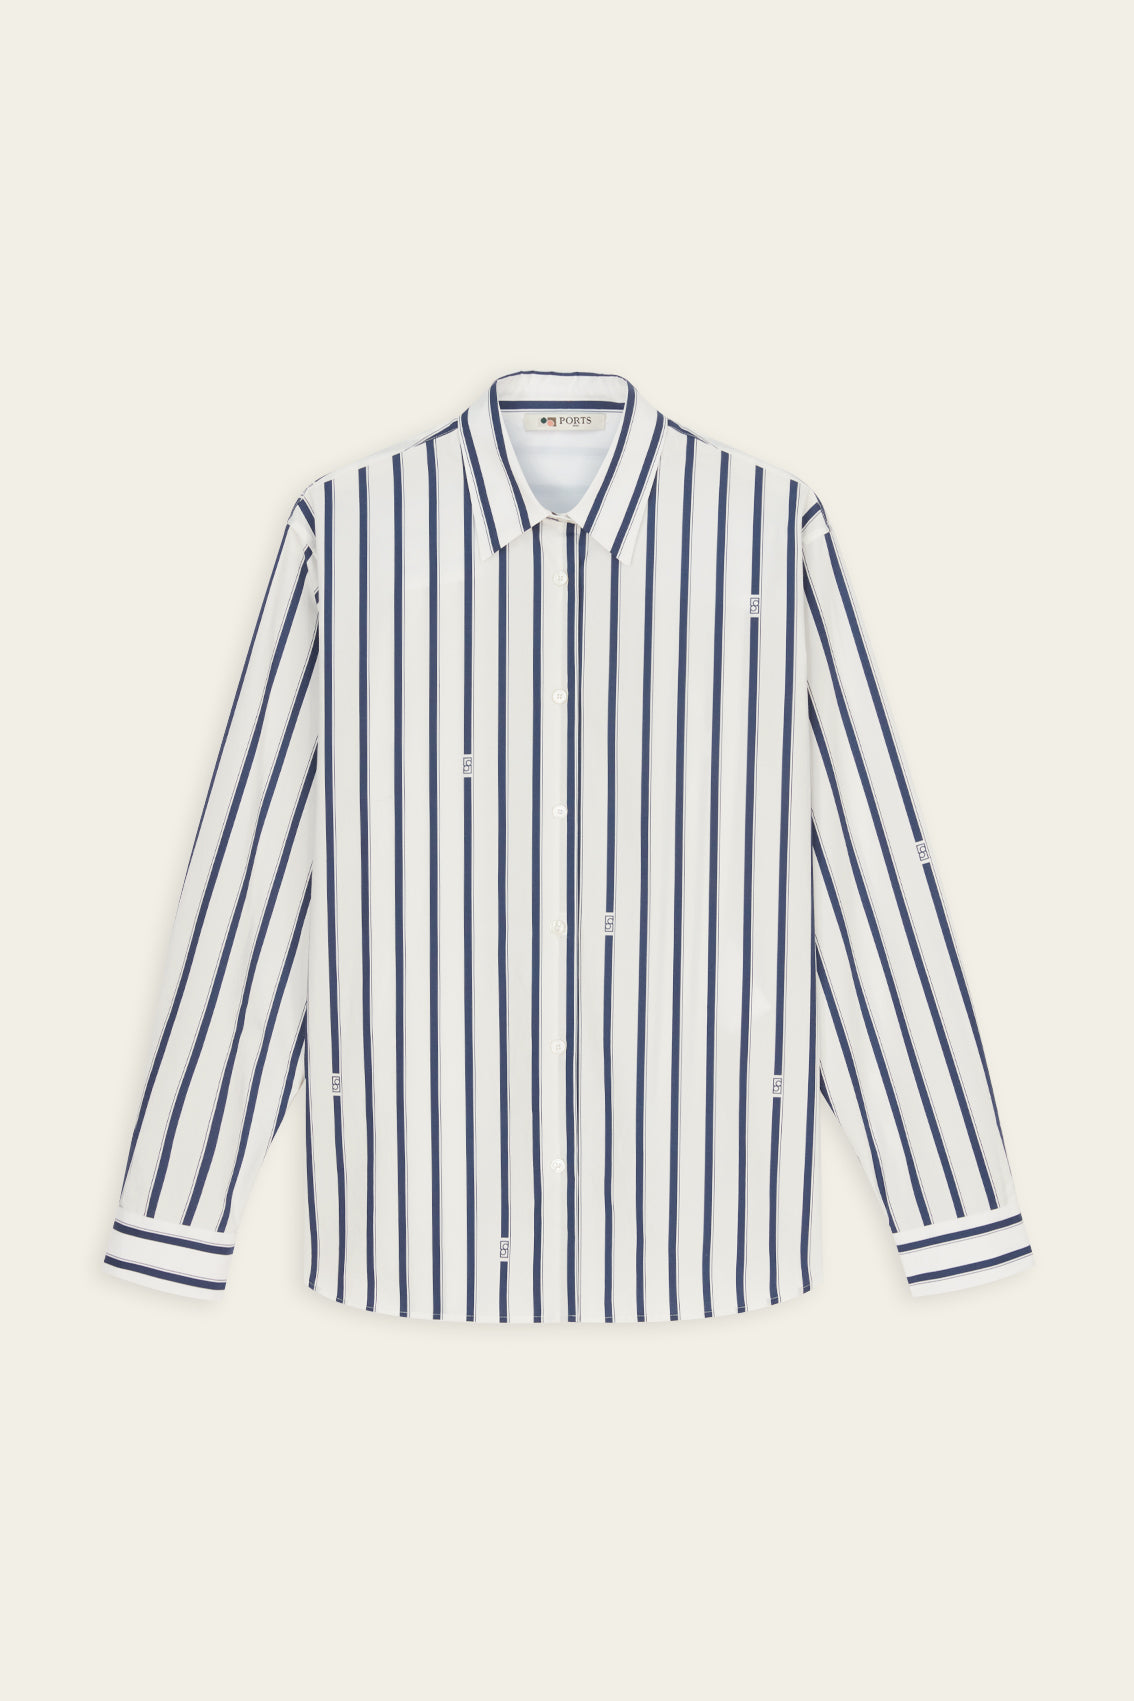 Breton Stripe Button Down Shirt